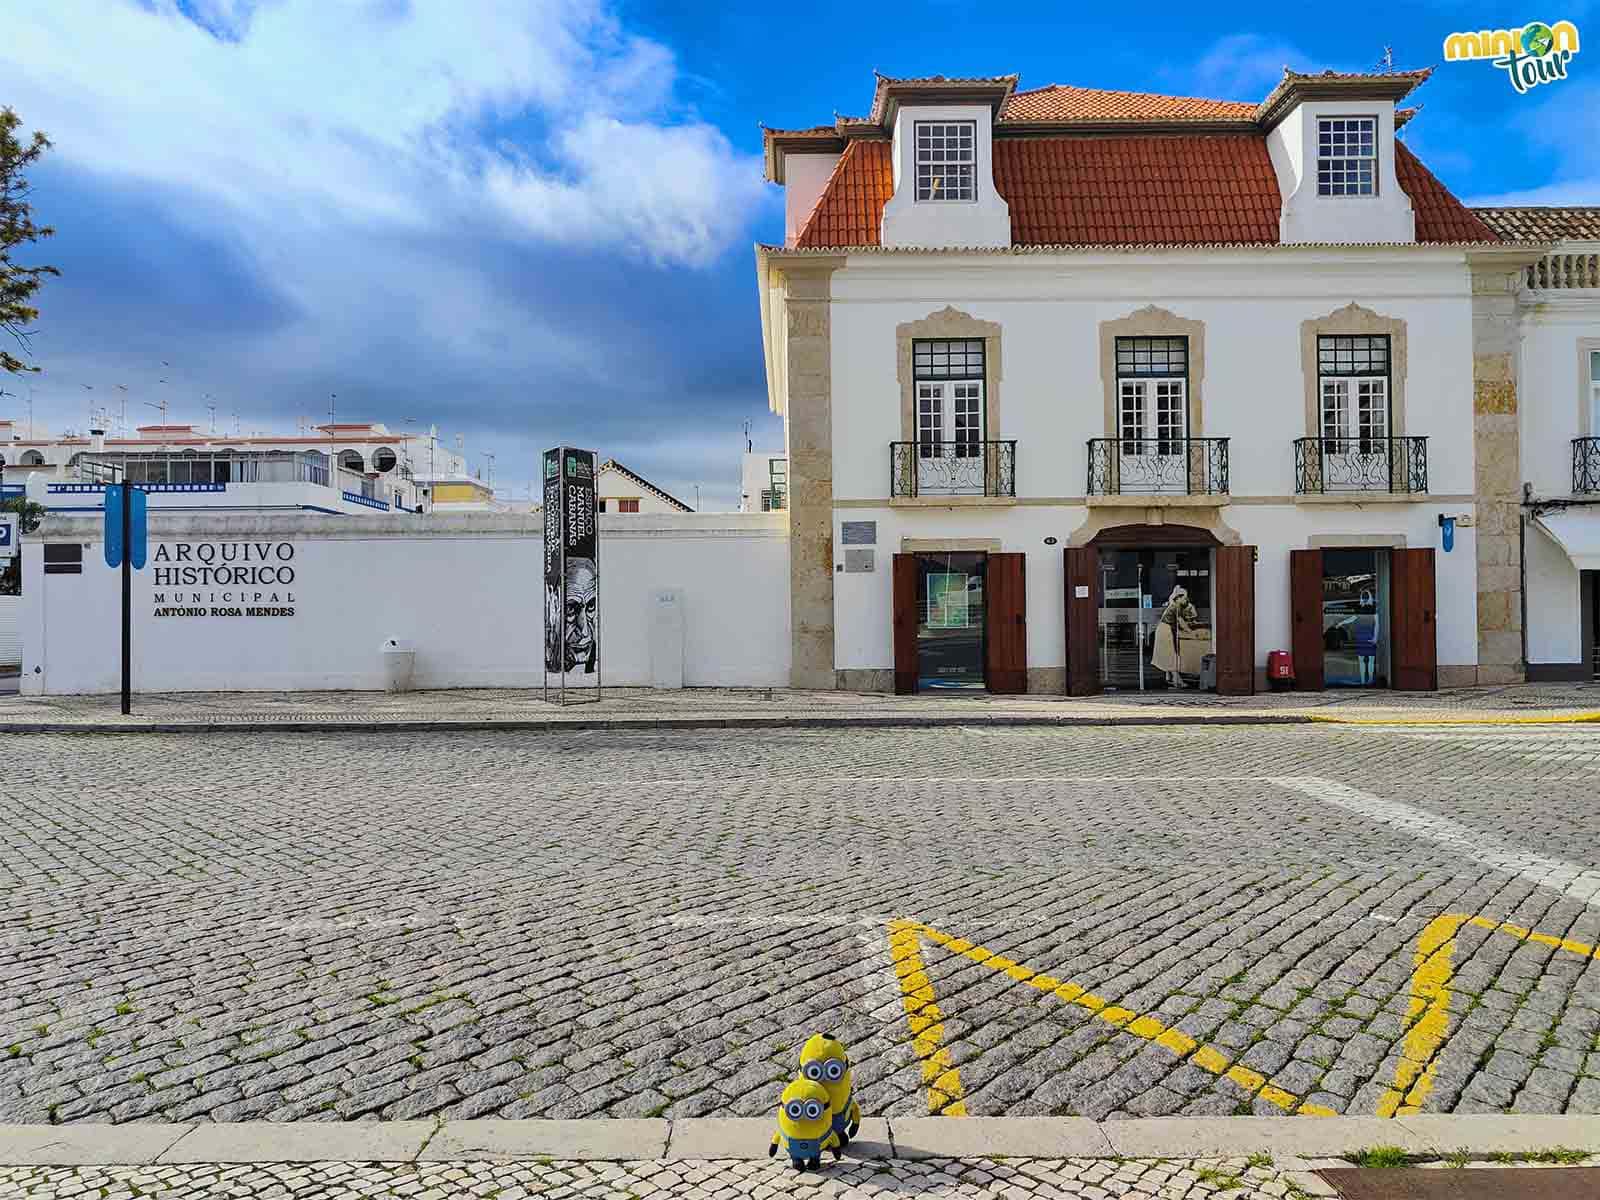 El Archivo Histórico es otro de los sitios que tienes que ver en Vila Real de Santo António